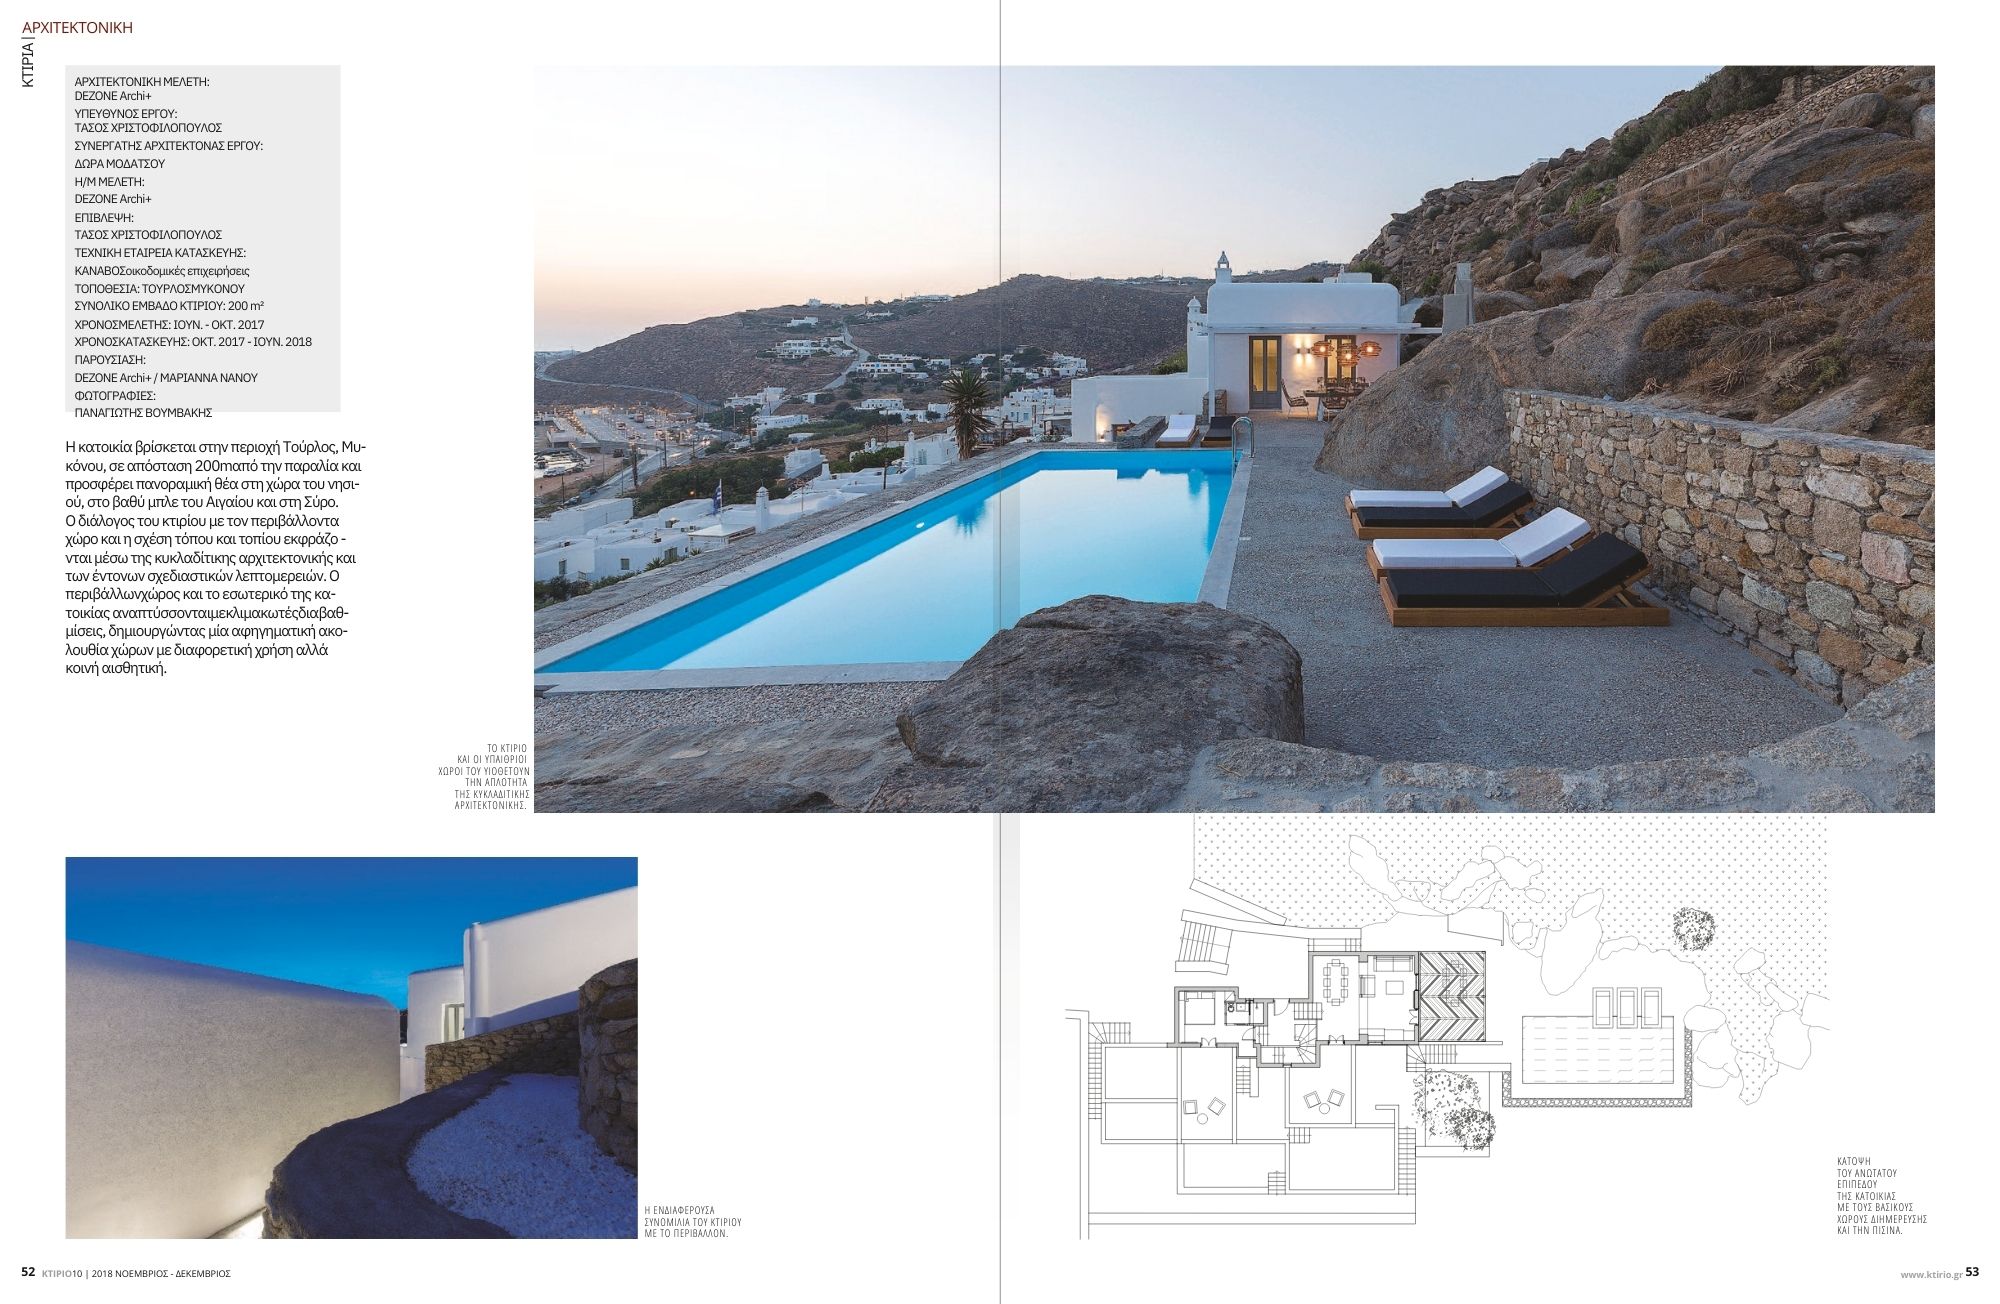 Ktirio Nov 2018 Sealine Villas Mykonos by Dezone Archi (4)